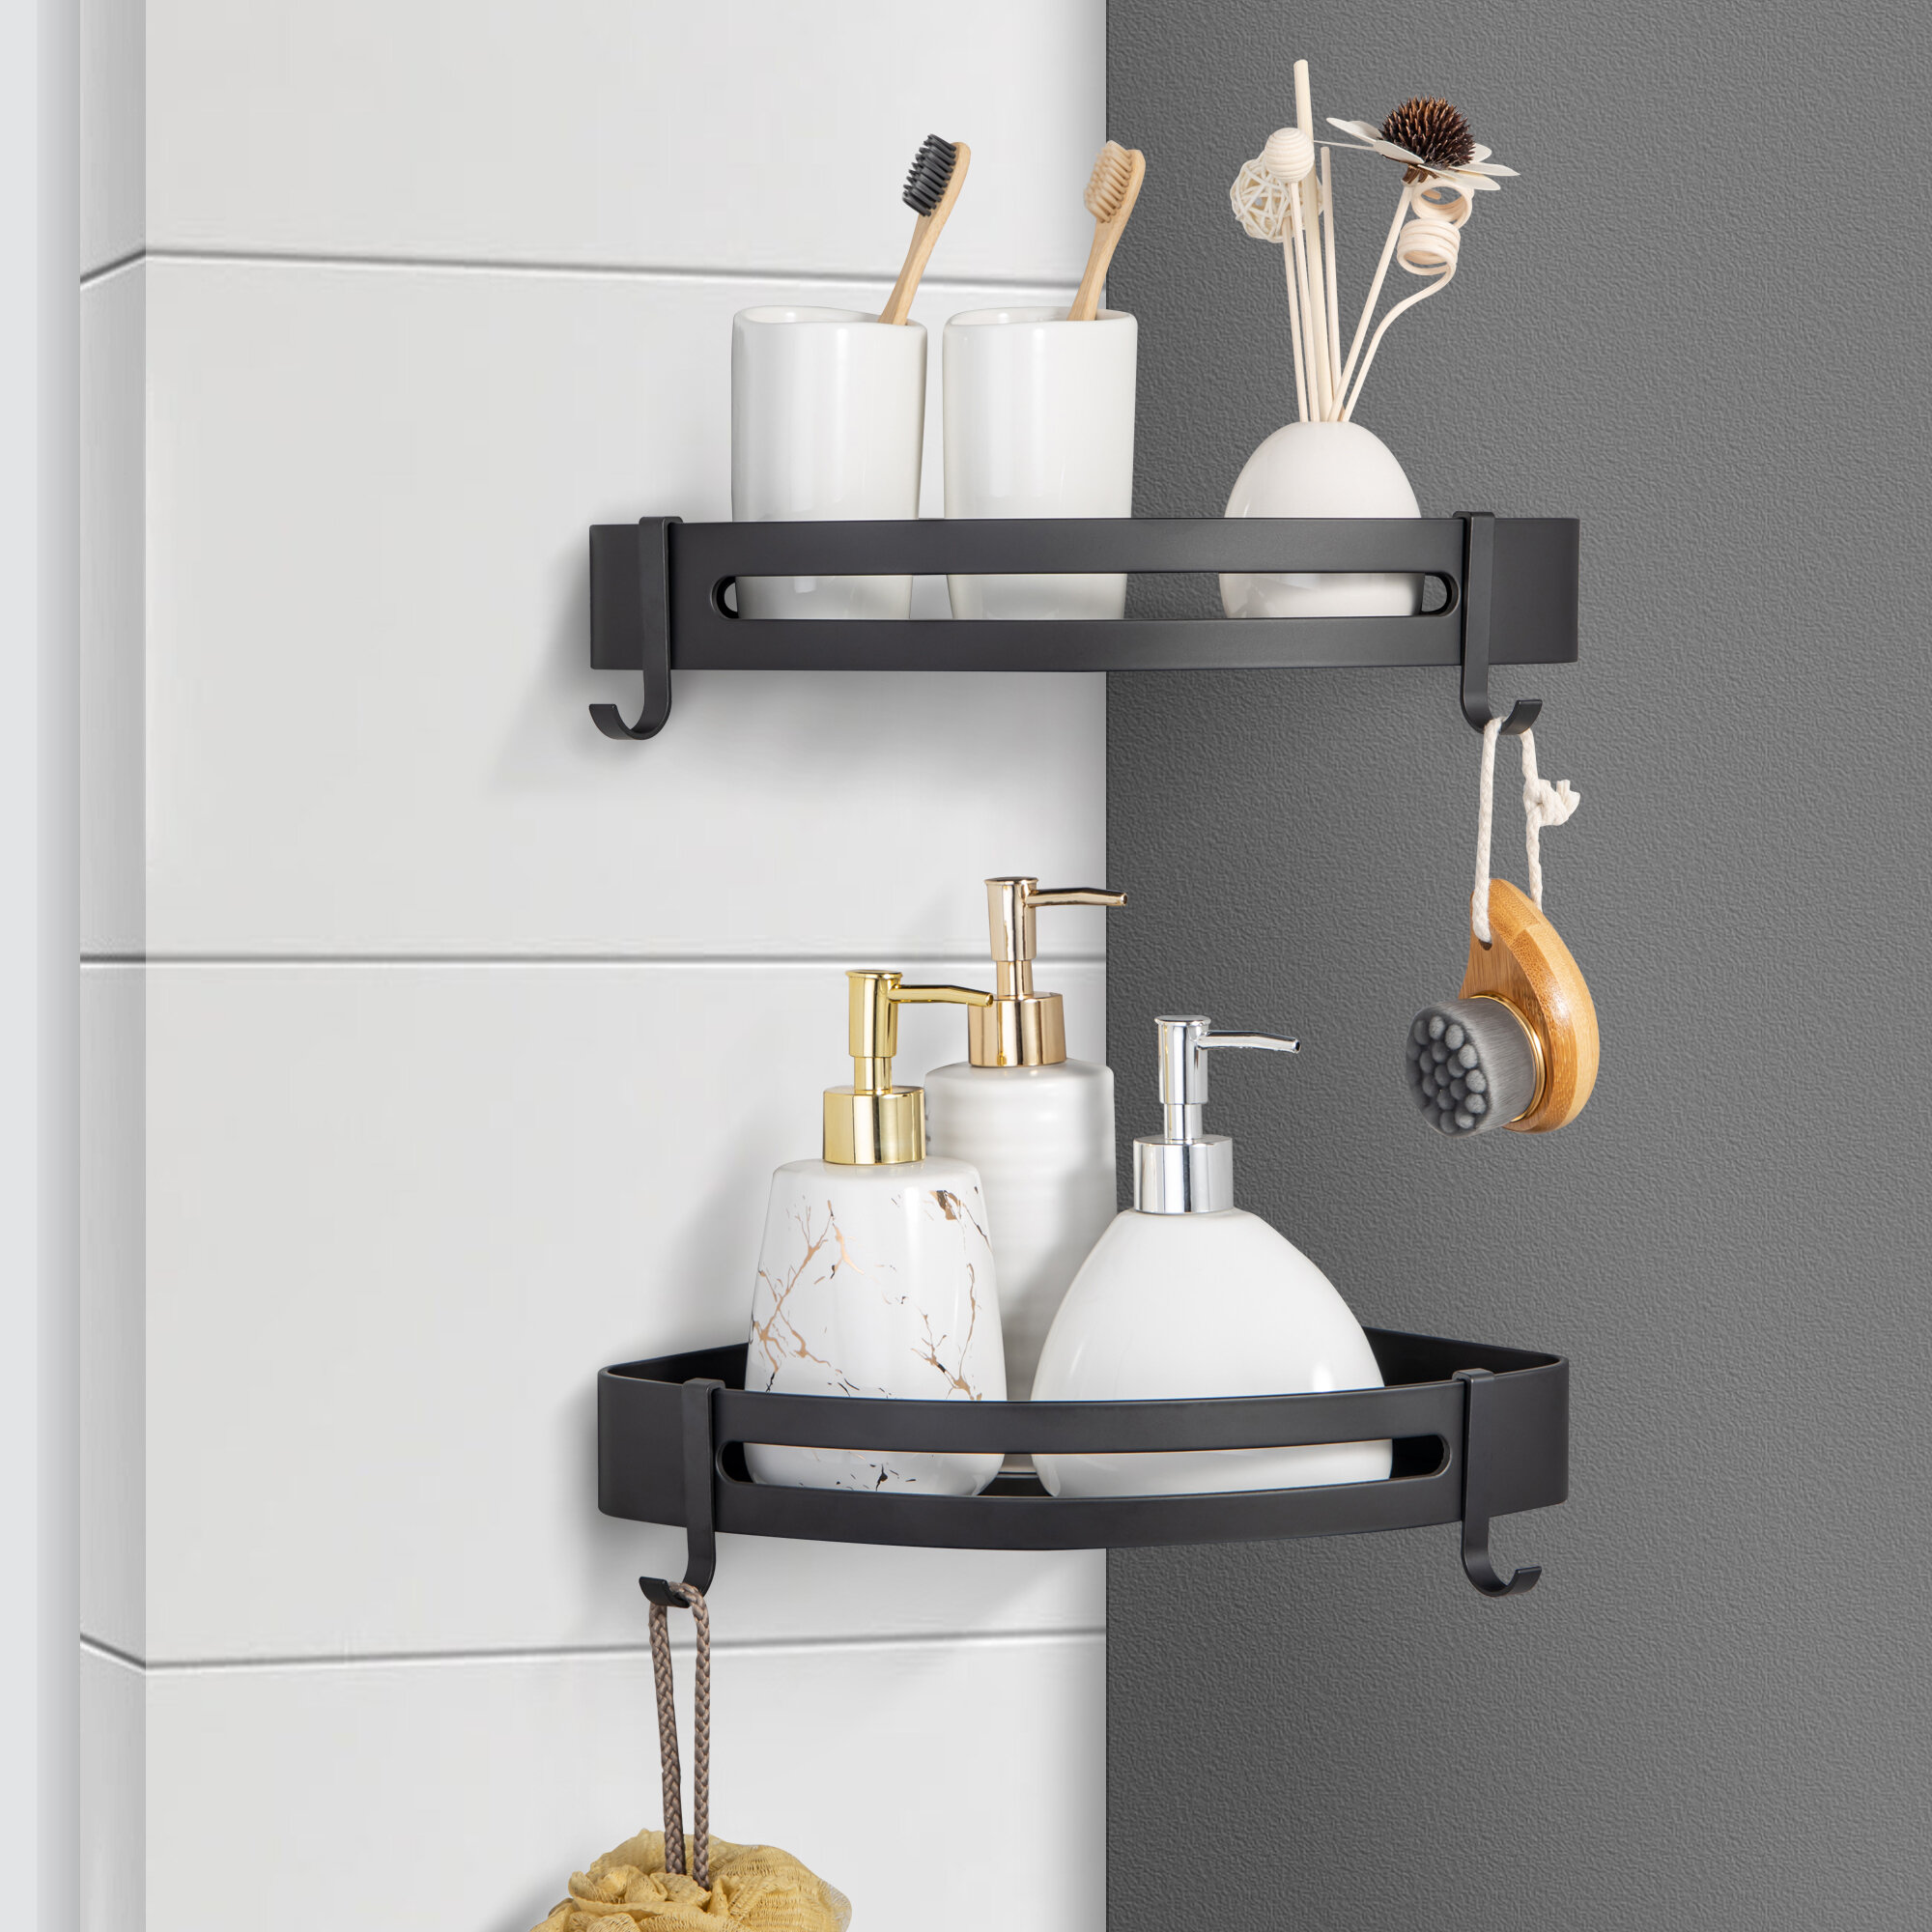 Shower Caddy Adhesive Bathroom Storage Shelf Kitchen Rack Organizer Paper Holder